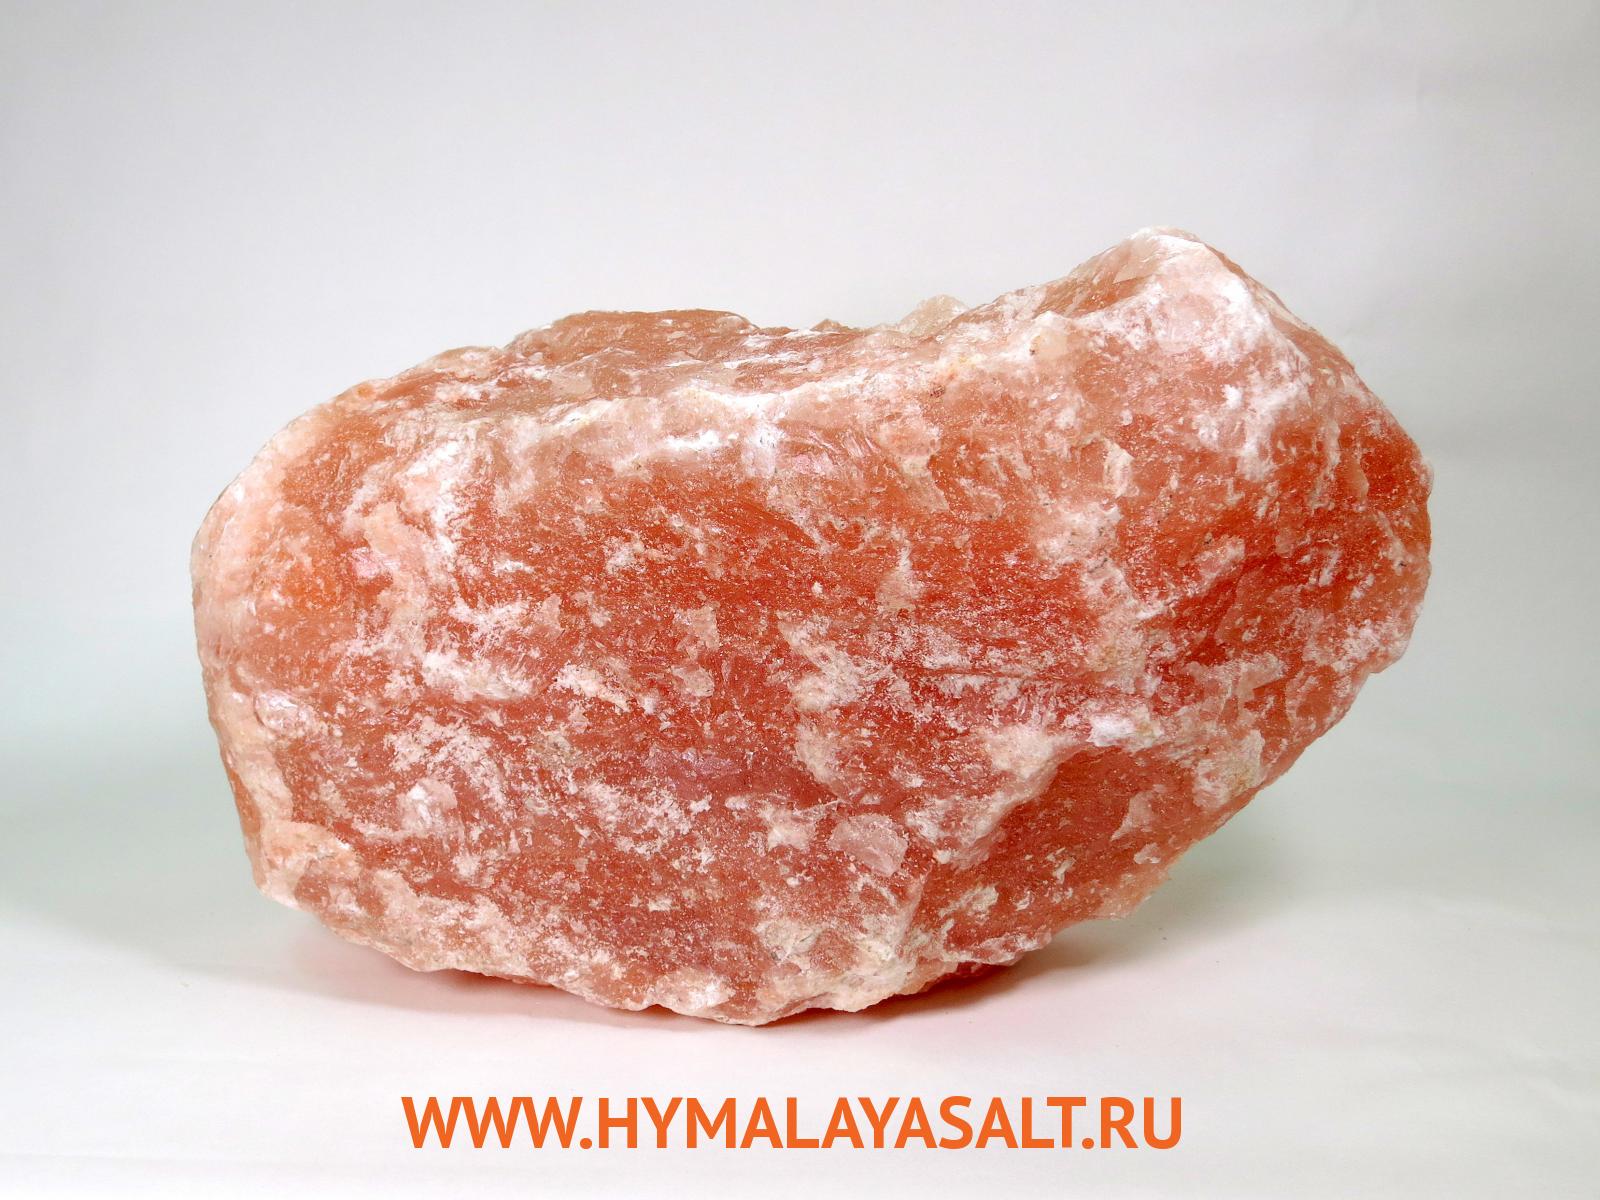 Гималайская соль: Камень из гималайской соли 30 кг